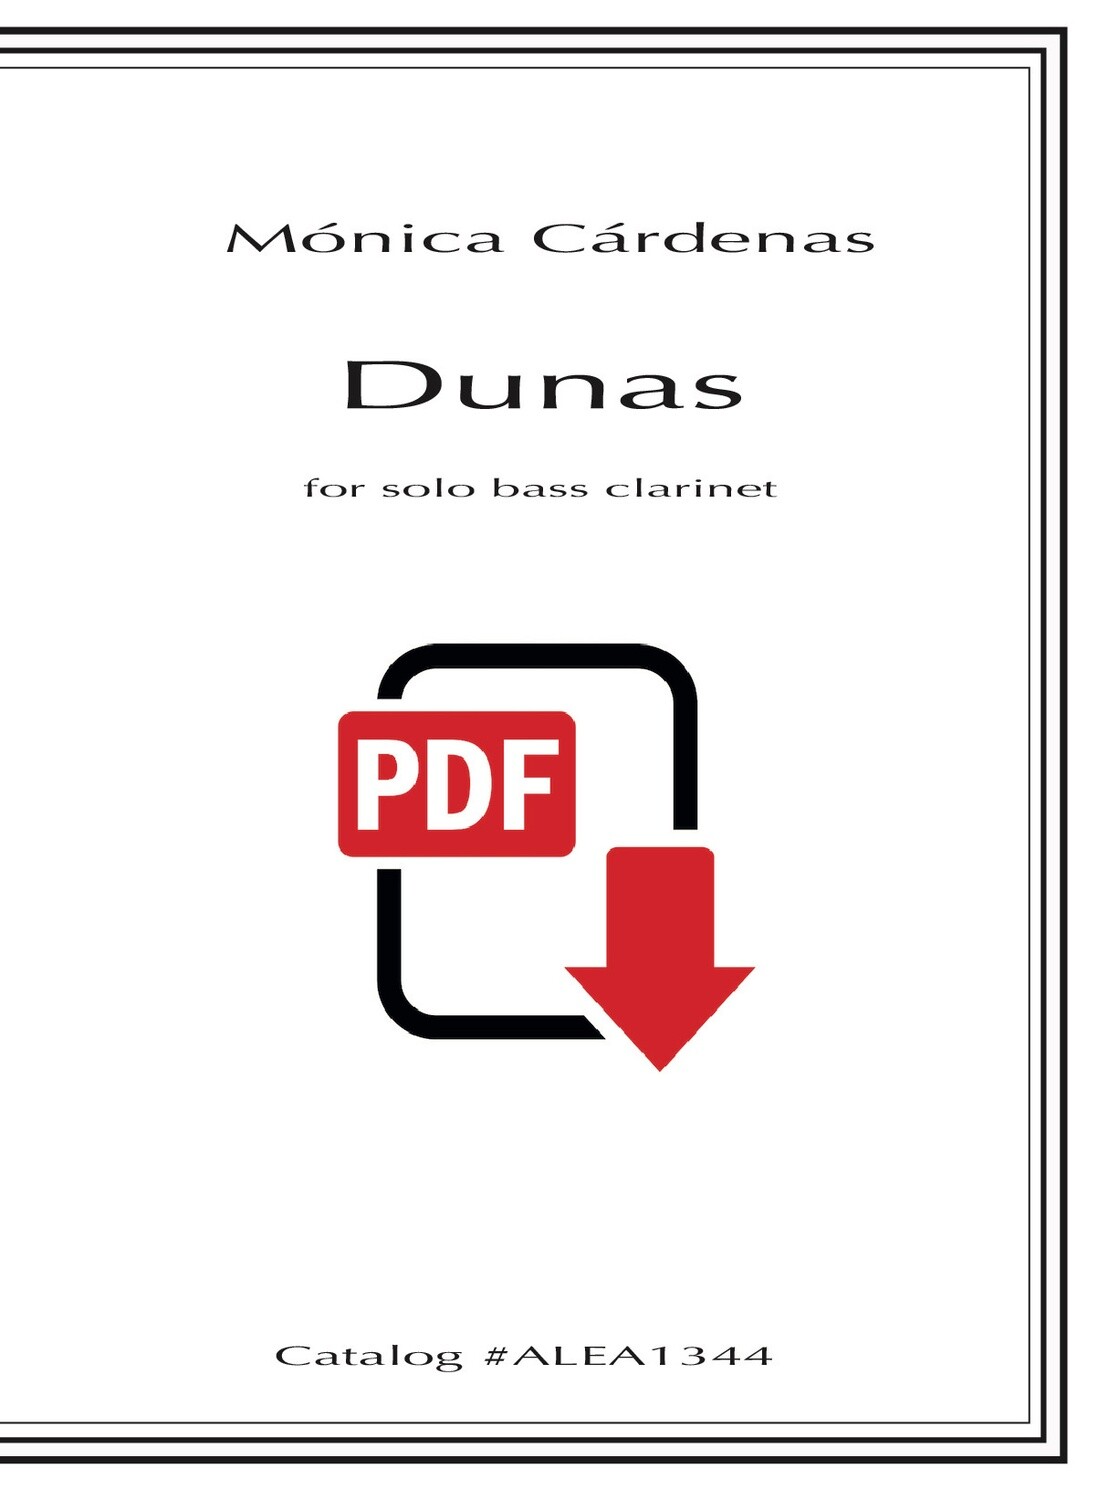 Cardenas: Dunas for solo bass clarinet (PDF)